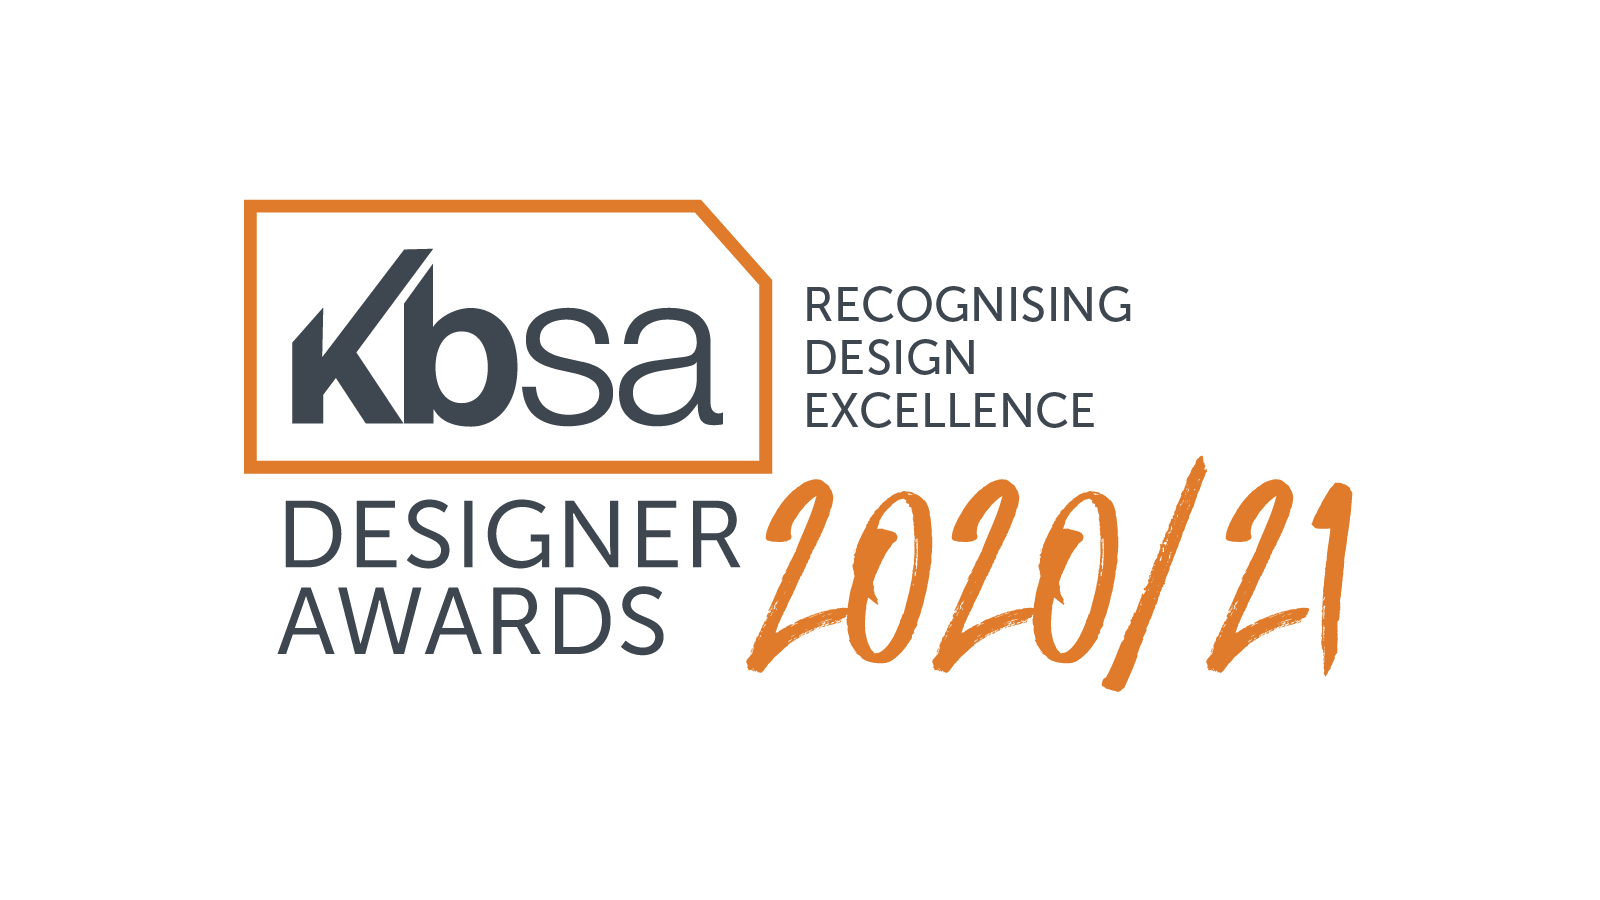 Kbsa Awards deadline extended